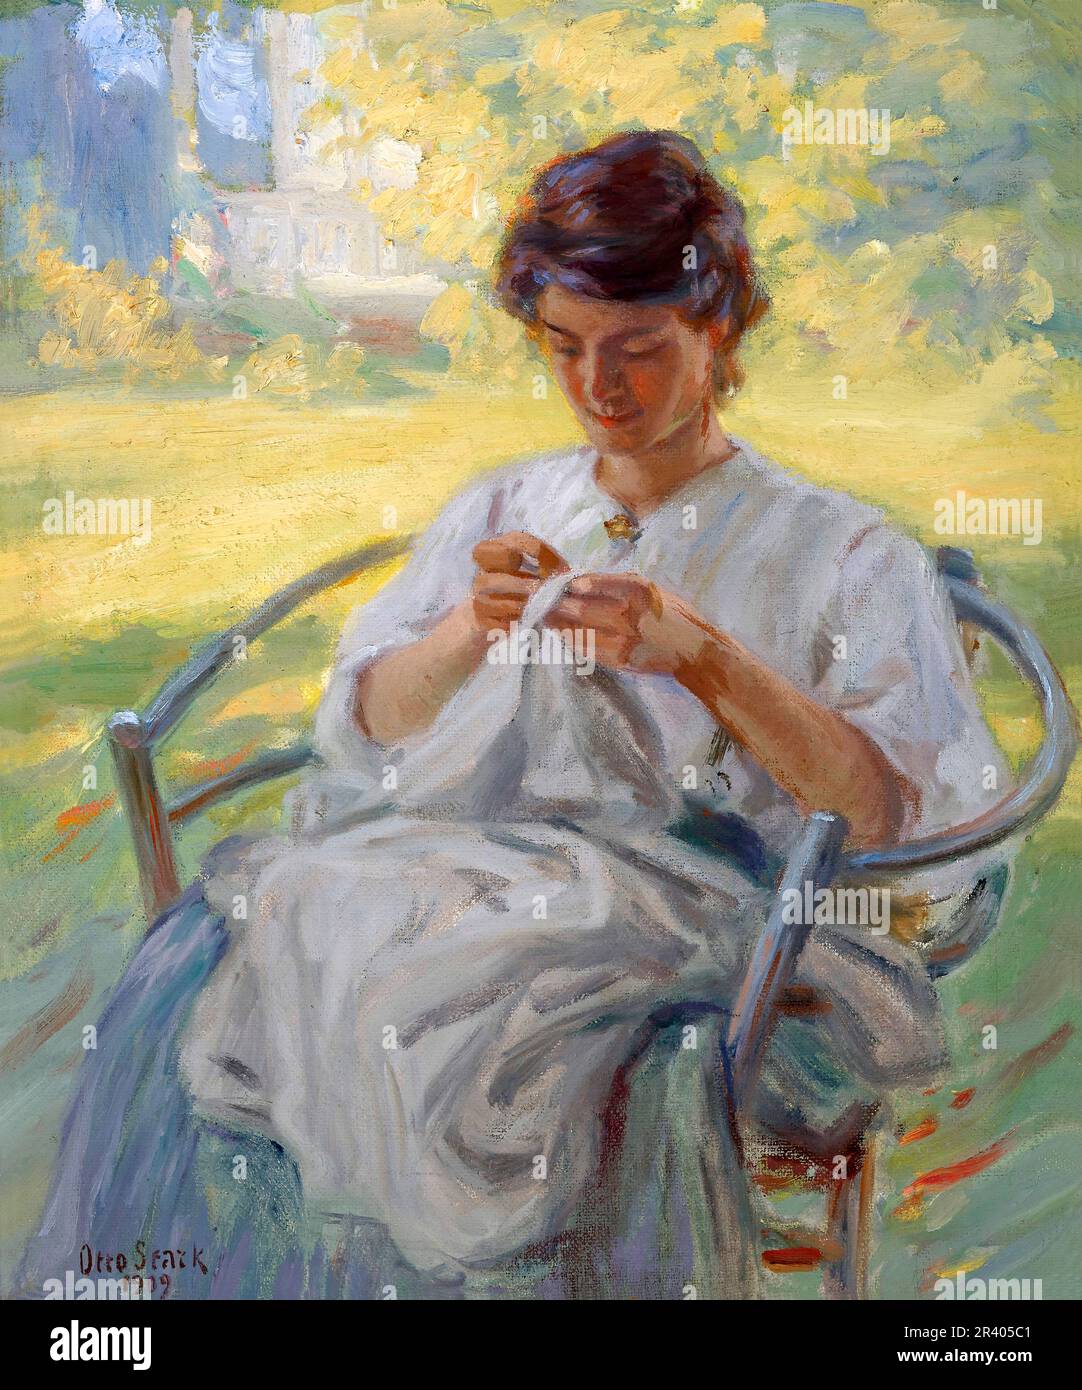 Un matin d'été par le peintre impressionniste américain Otto Stark (1859-1926), huile sur toile, 1909 Banque D'Images